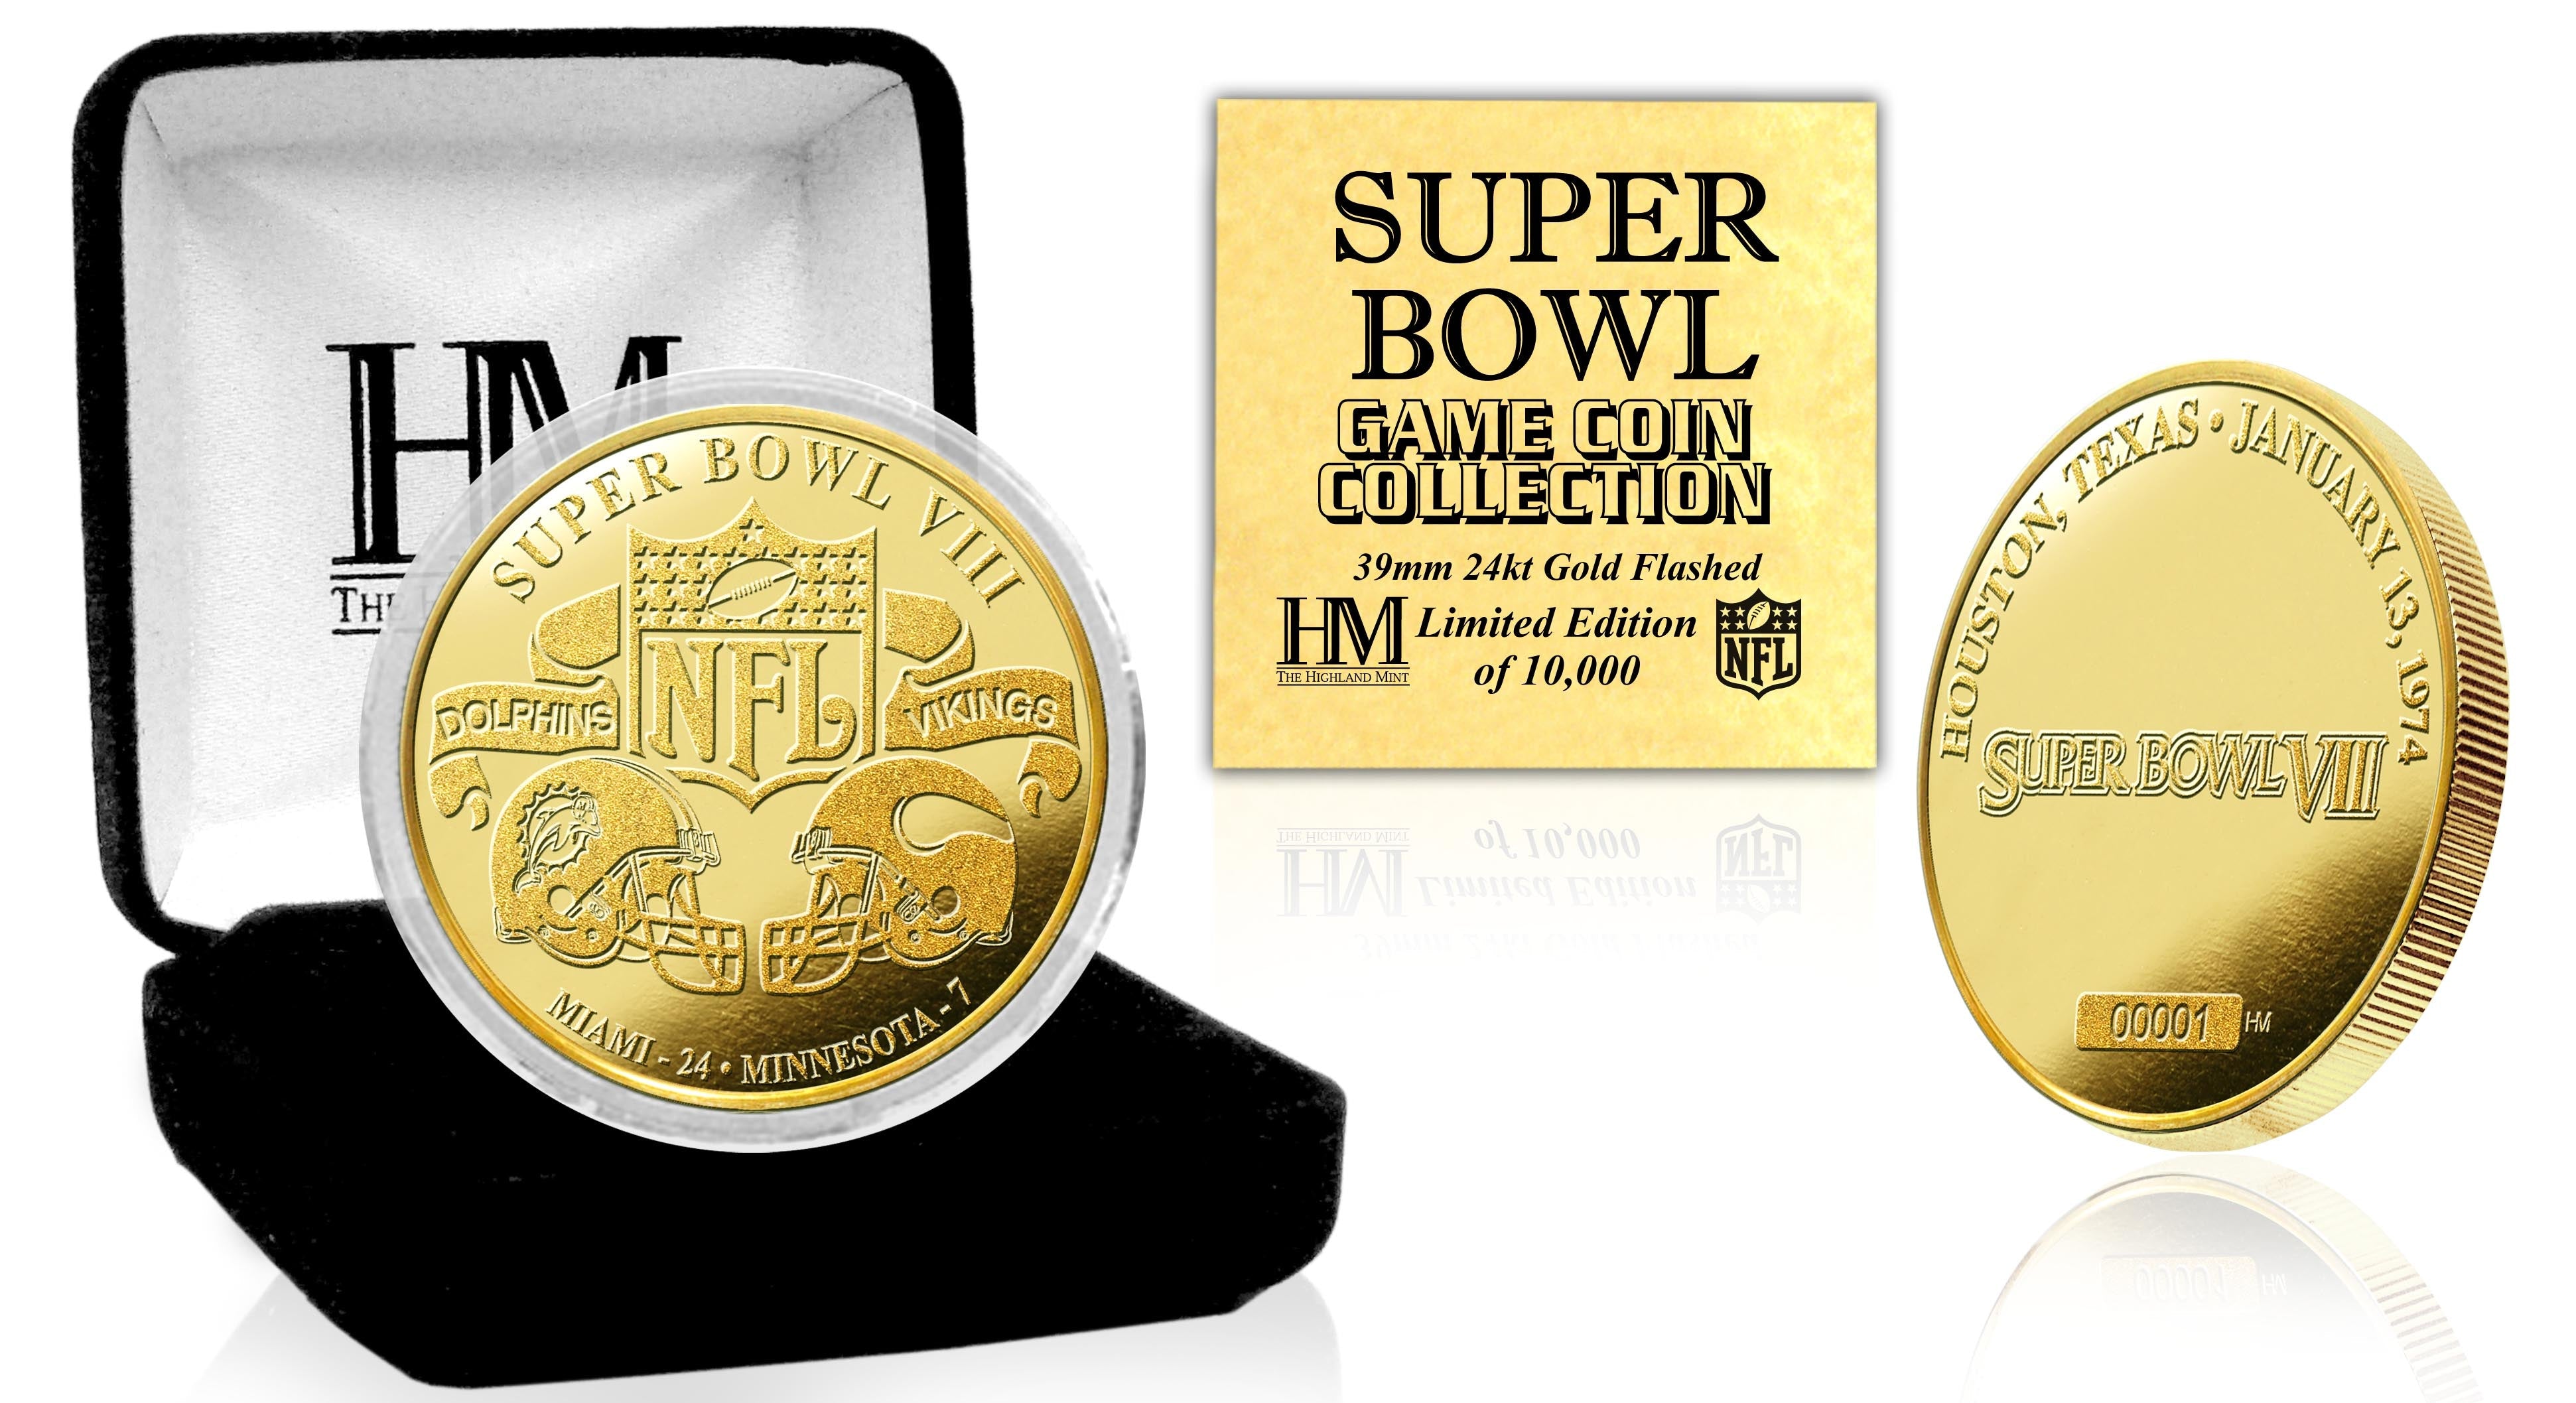 Super Bowl VIII 24kt Gold Flip Coin